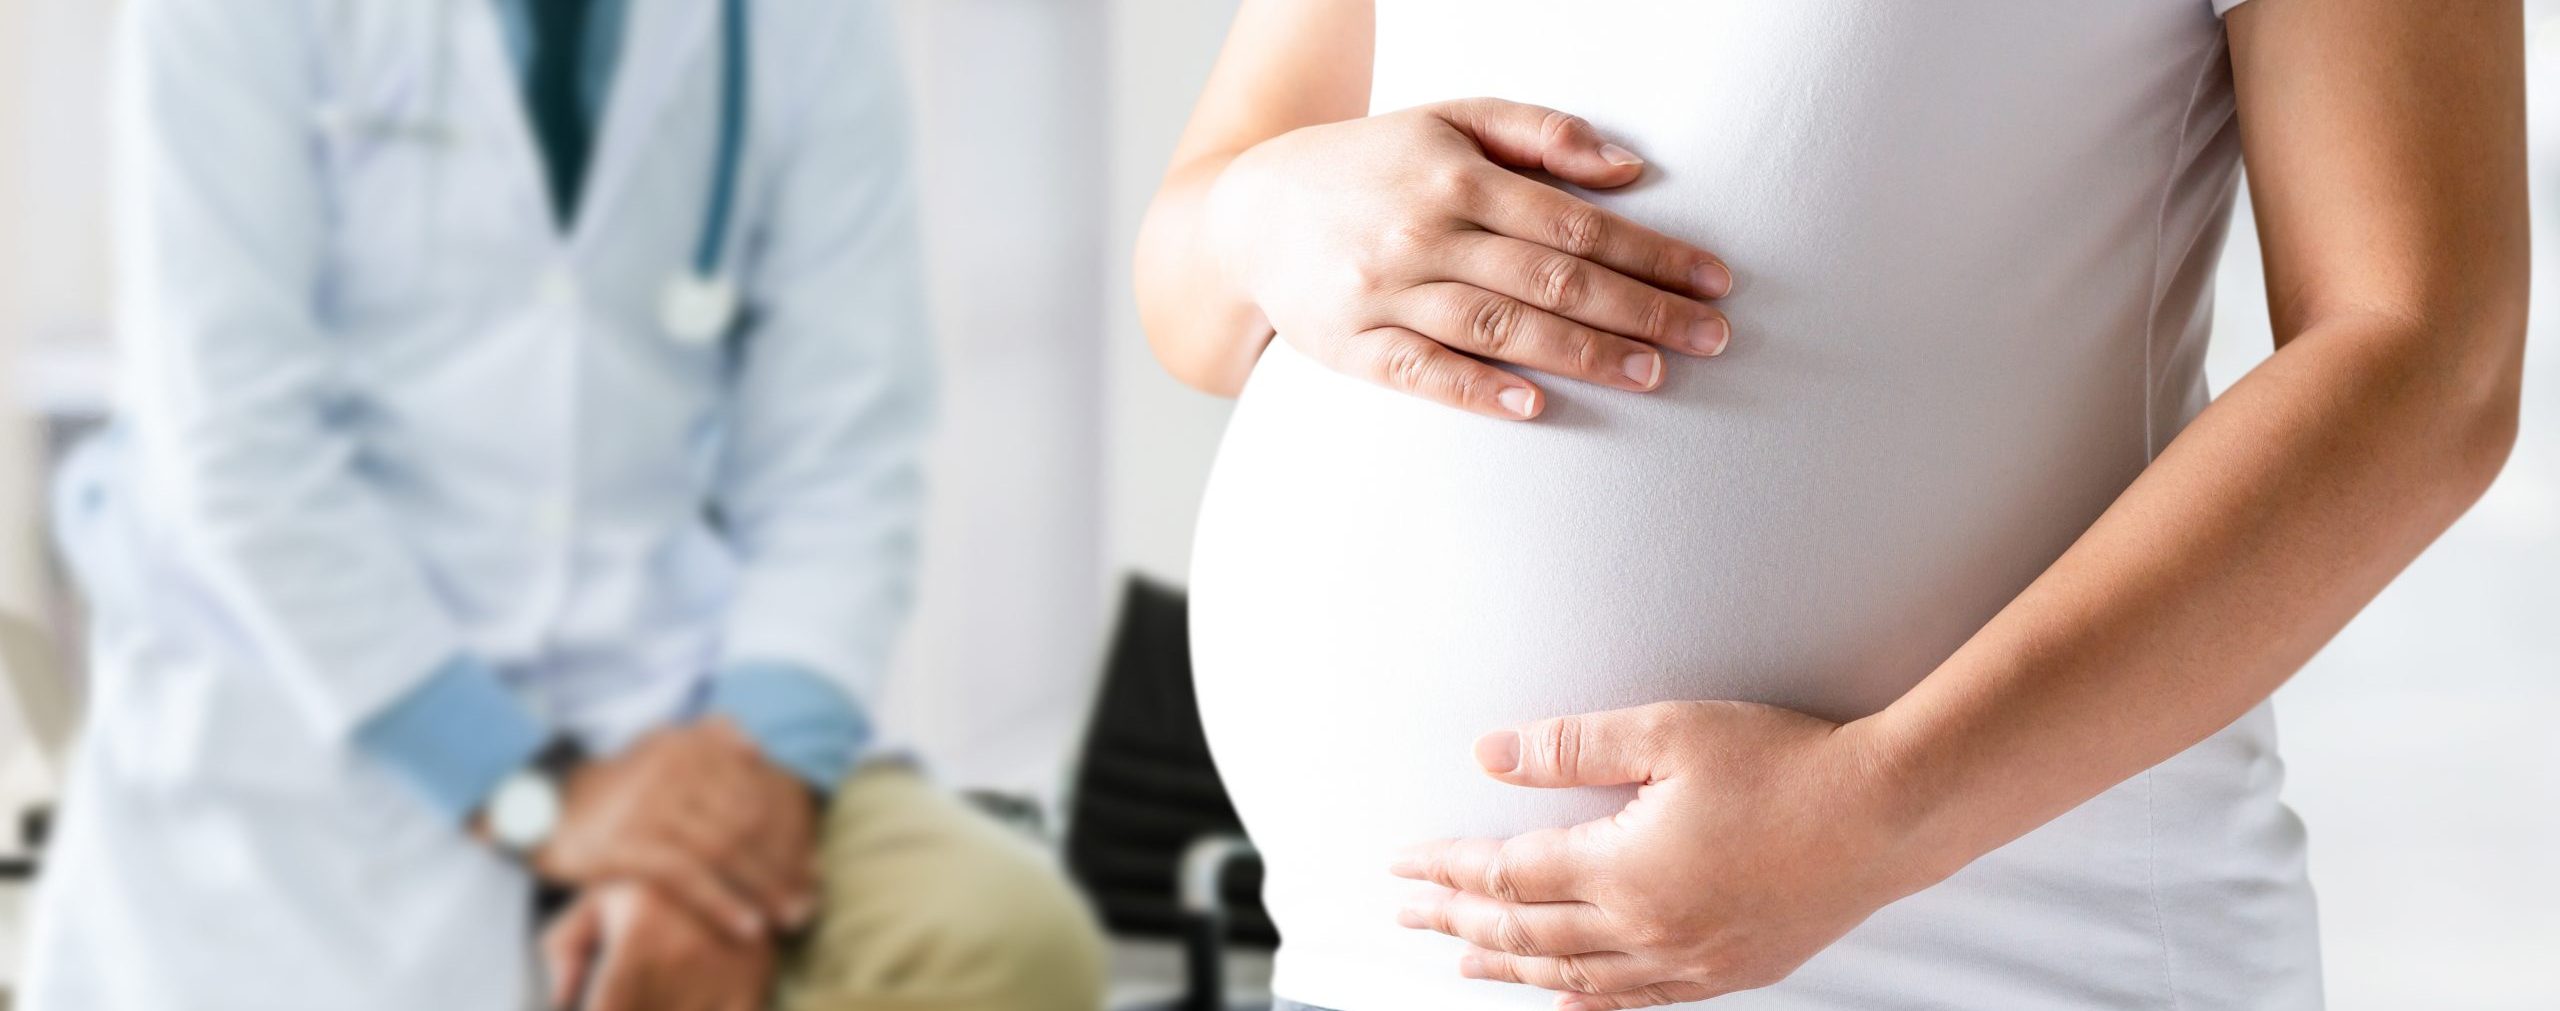 Cuidados durante el embarazo: Todo lo que necesitas saber.